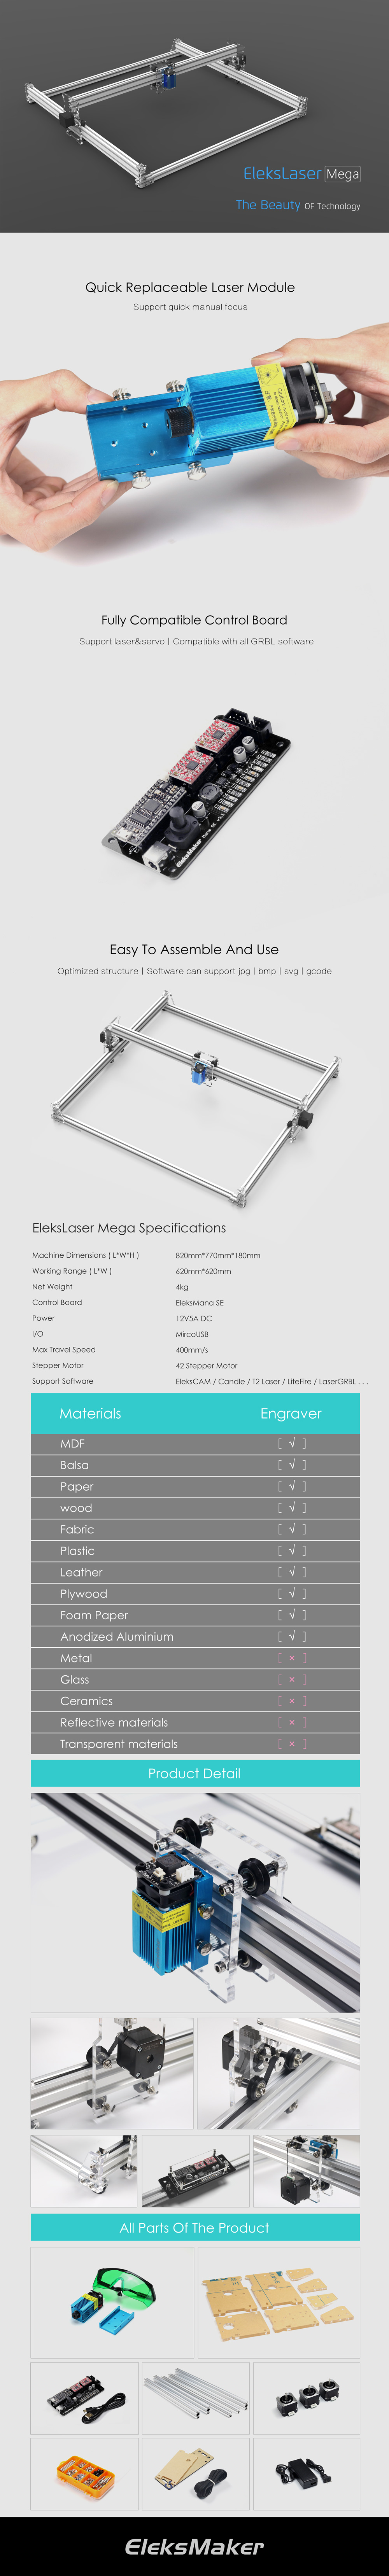 EleksMaker® EleksLaser-Mega 500mW/1600mW/2500mW Laser Engraving Machine CNC Laser Printer 29